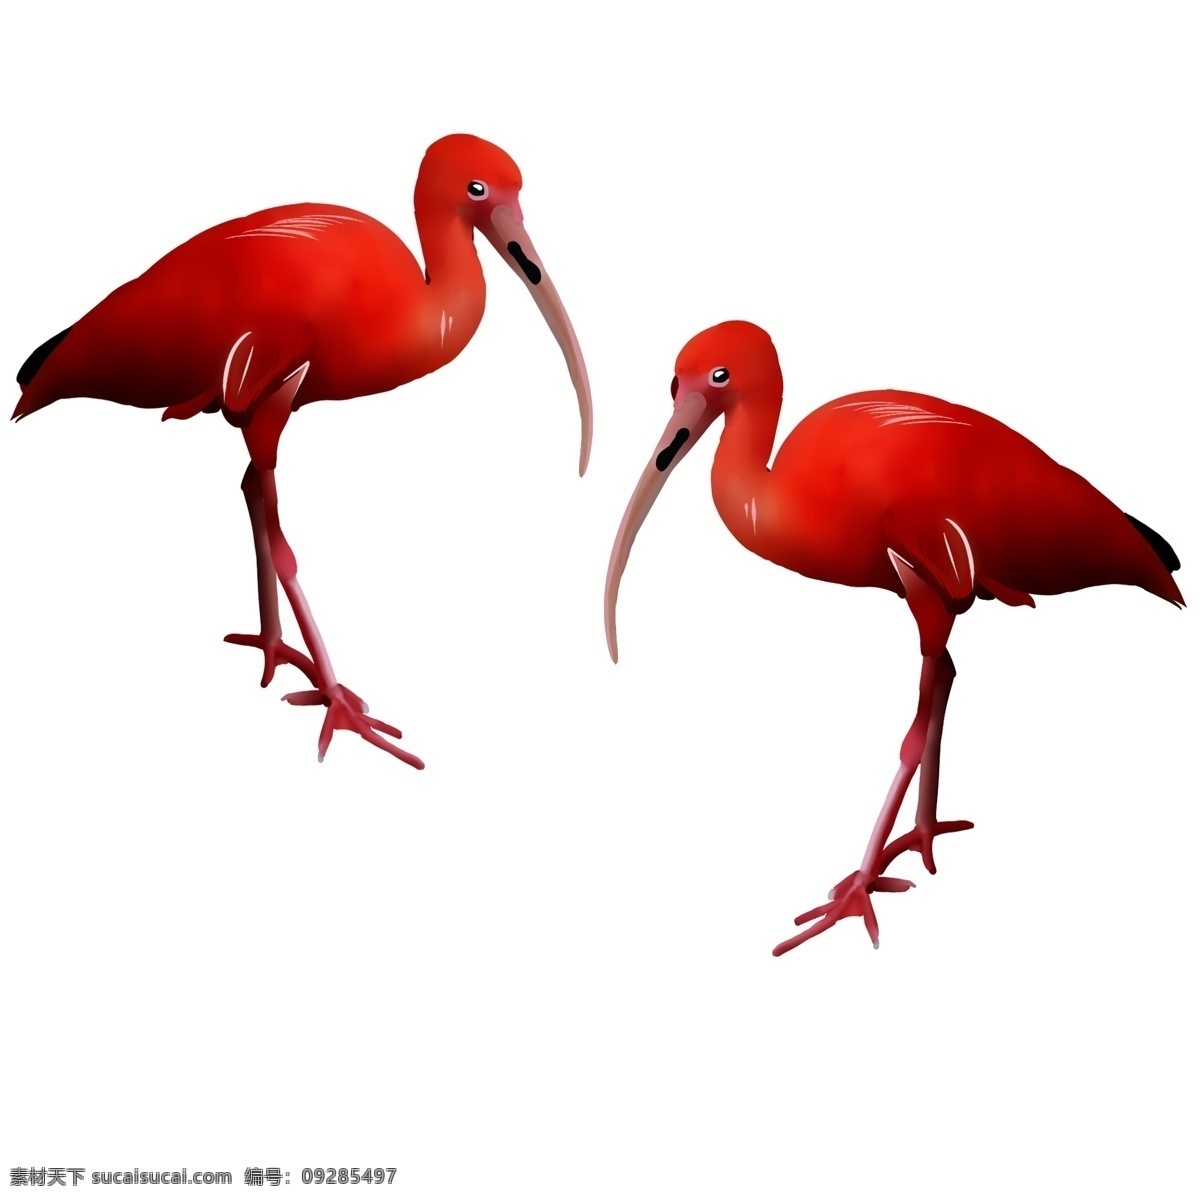 手绘 爱情 小鸟 插画 漂亮的小鸟 卡通插画 手绘爱情插画 恩爱的动物 红色的小鸟 长长的嘴巴